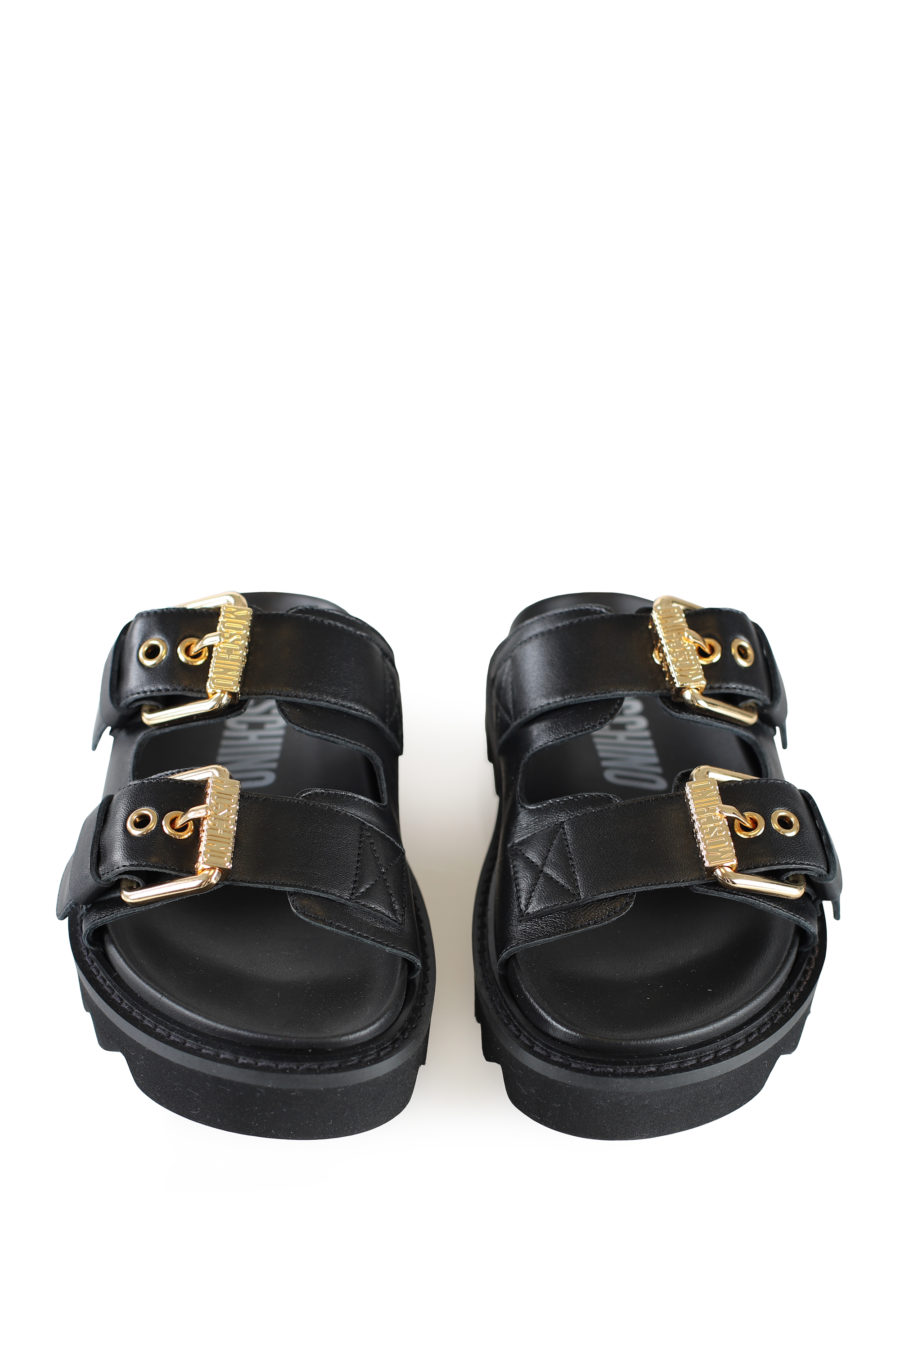 Sandales noires avec détails dorés - IMG 1942